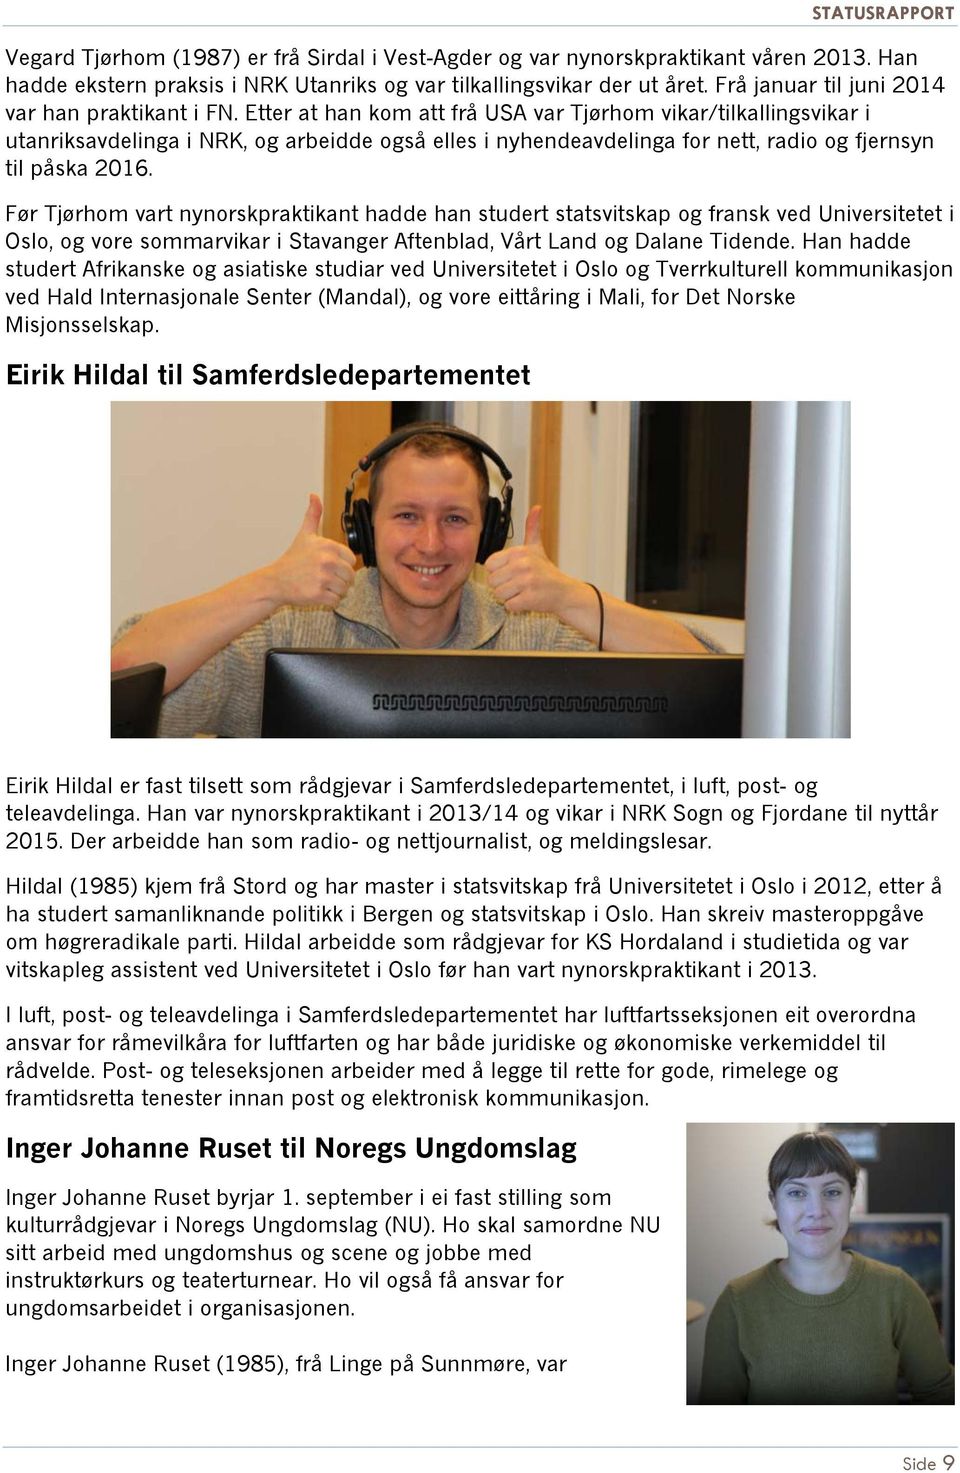 Etter at han kom att frå USA var Tjørhom vikar/tilkallingsvikar i utanriksavdelinga i NRK, og arbeidde også elles i nyhendeavdelinga for nett, radio og fjernsyn til påska 2016.